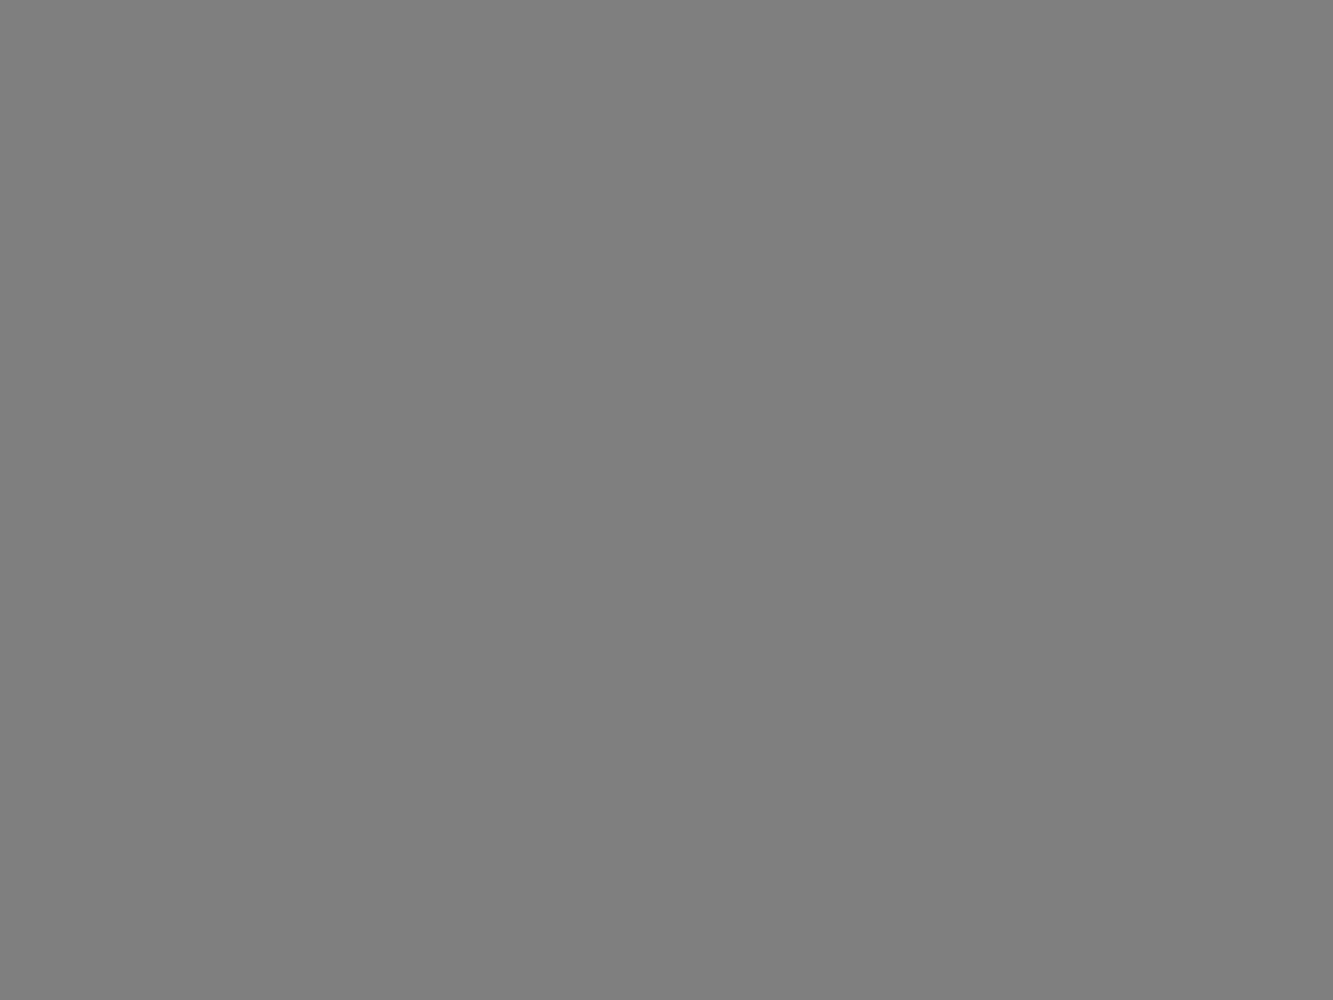 Художник Илья Глазунов пишет портрет писателя Владимира Солоухина. 1982 год. Фотография: Валентин Мастюков / ТАСС